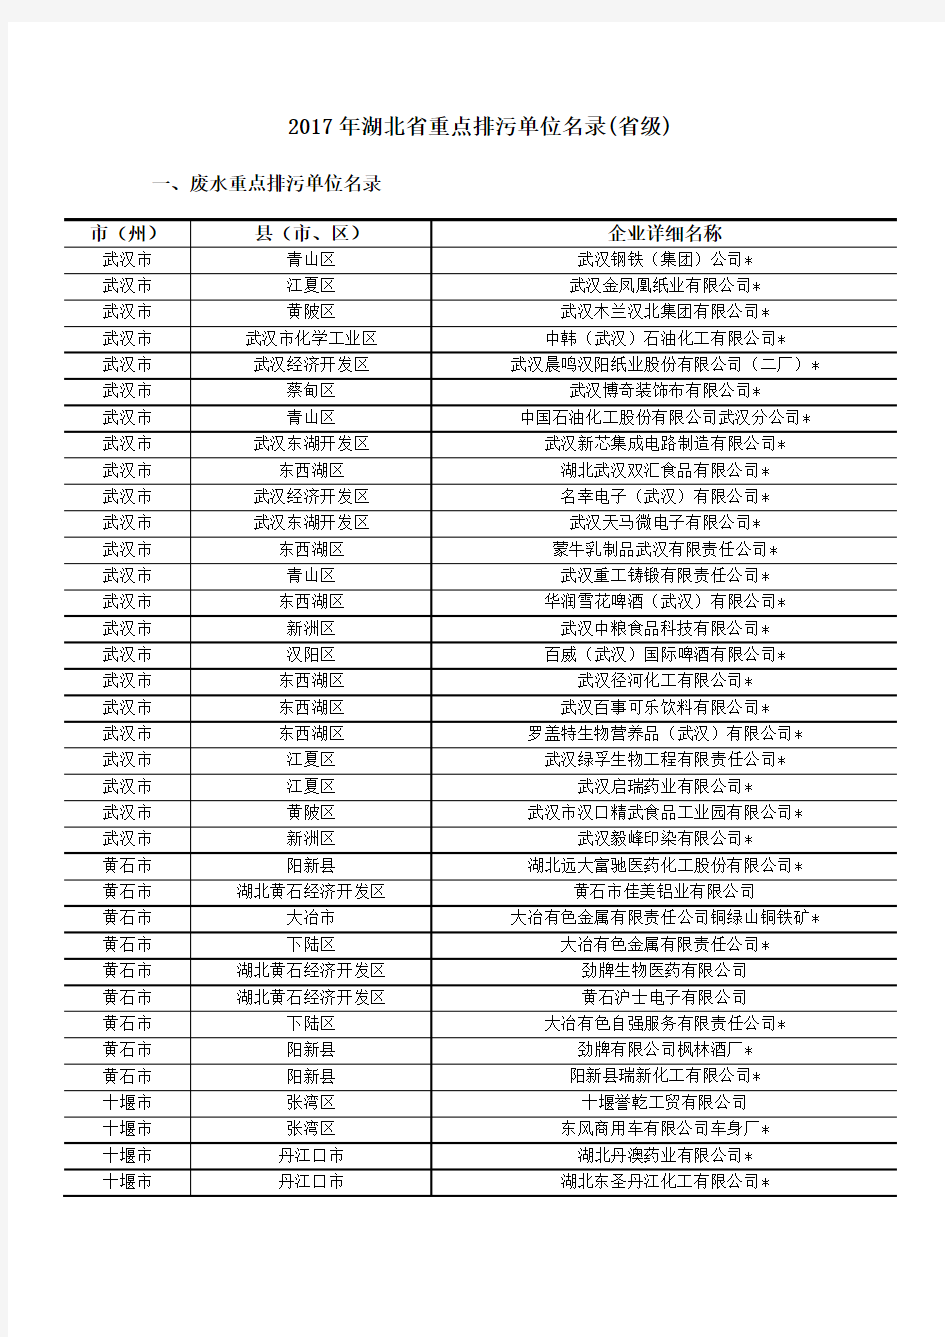 2017年湖北省重点排污单位名录(省级)